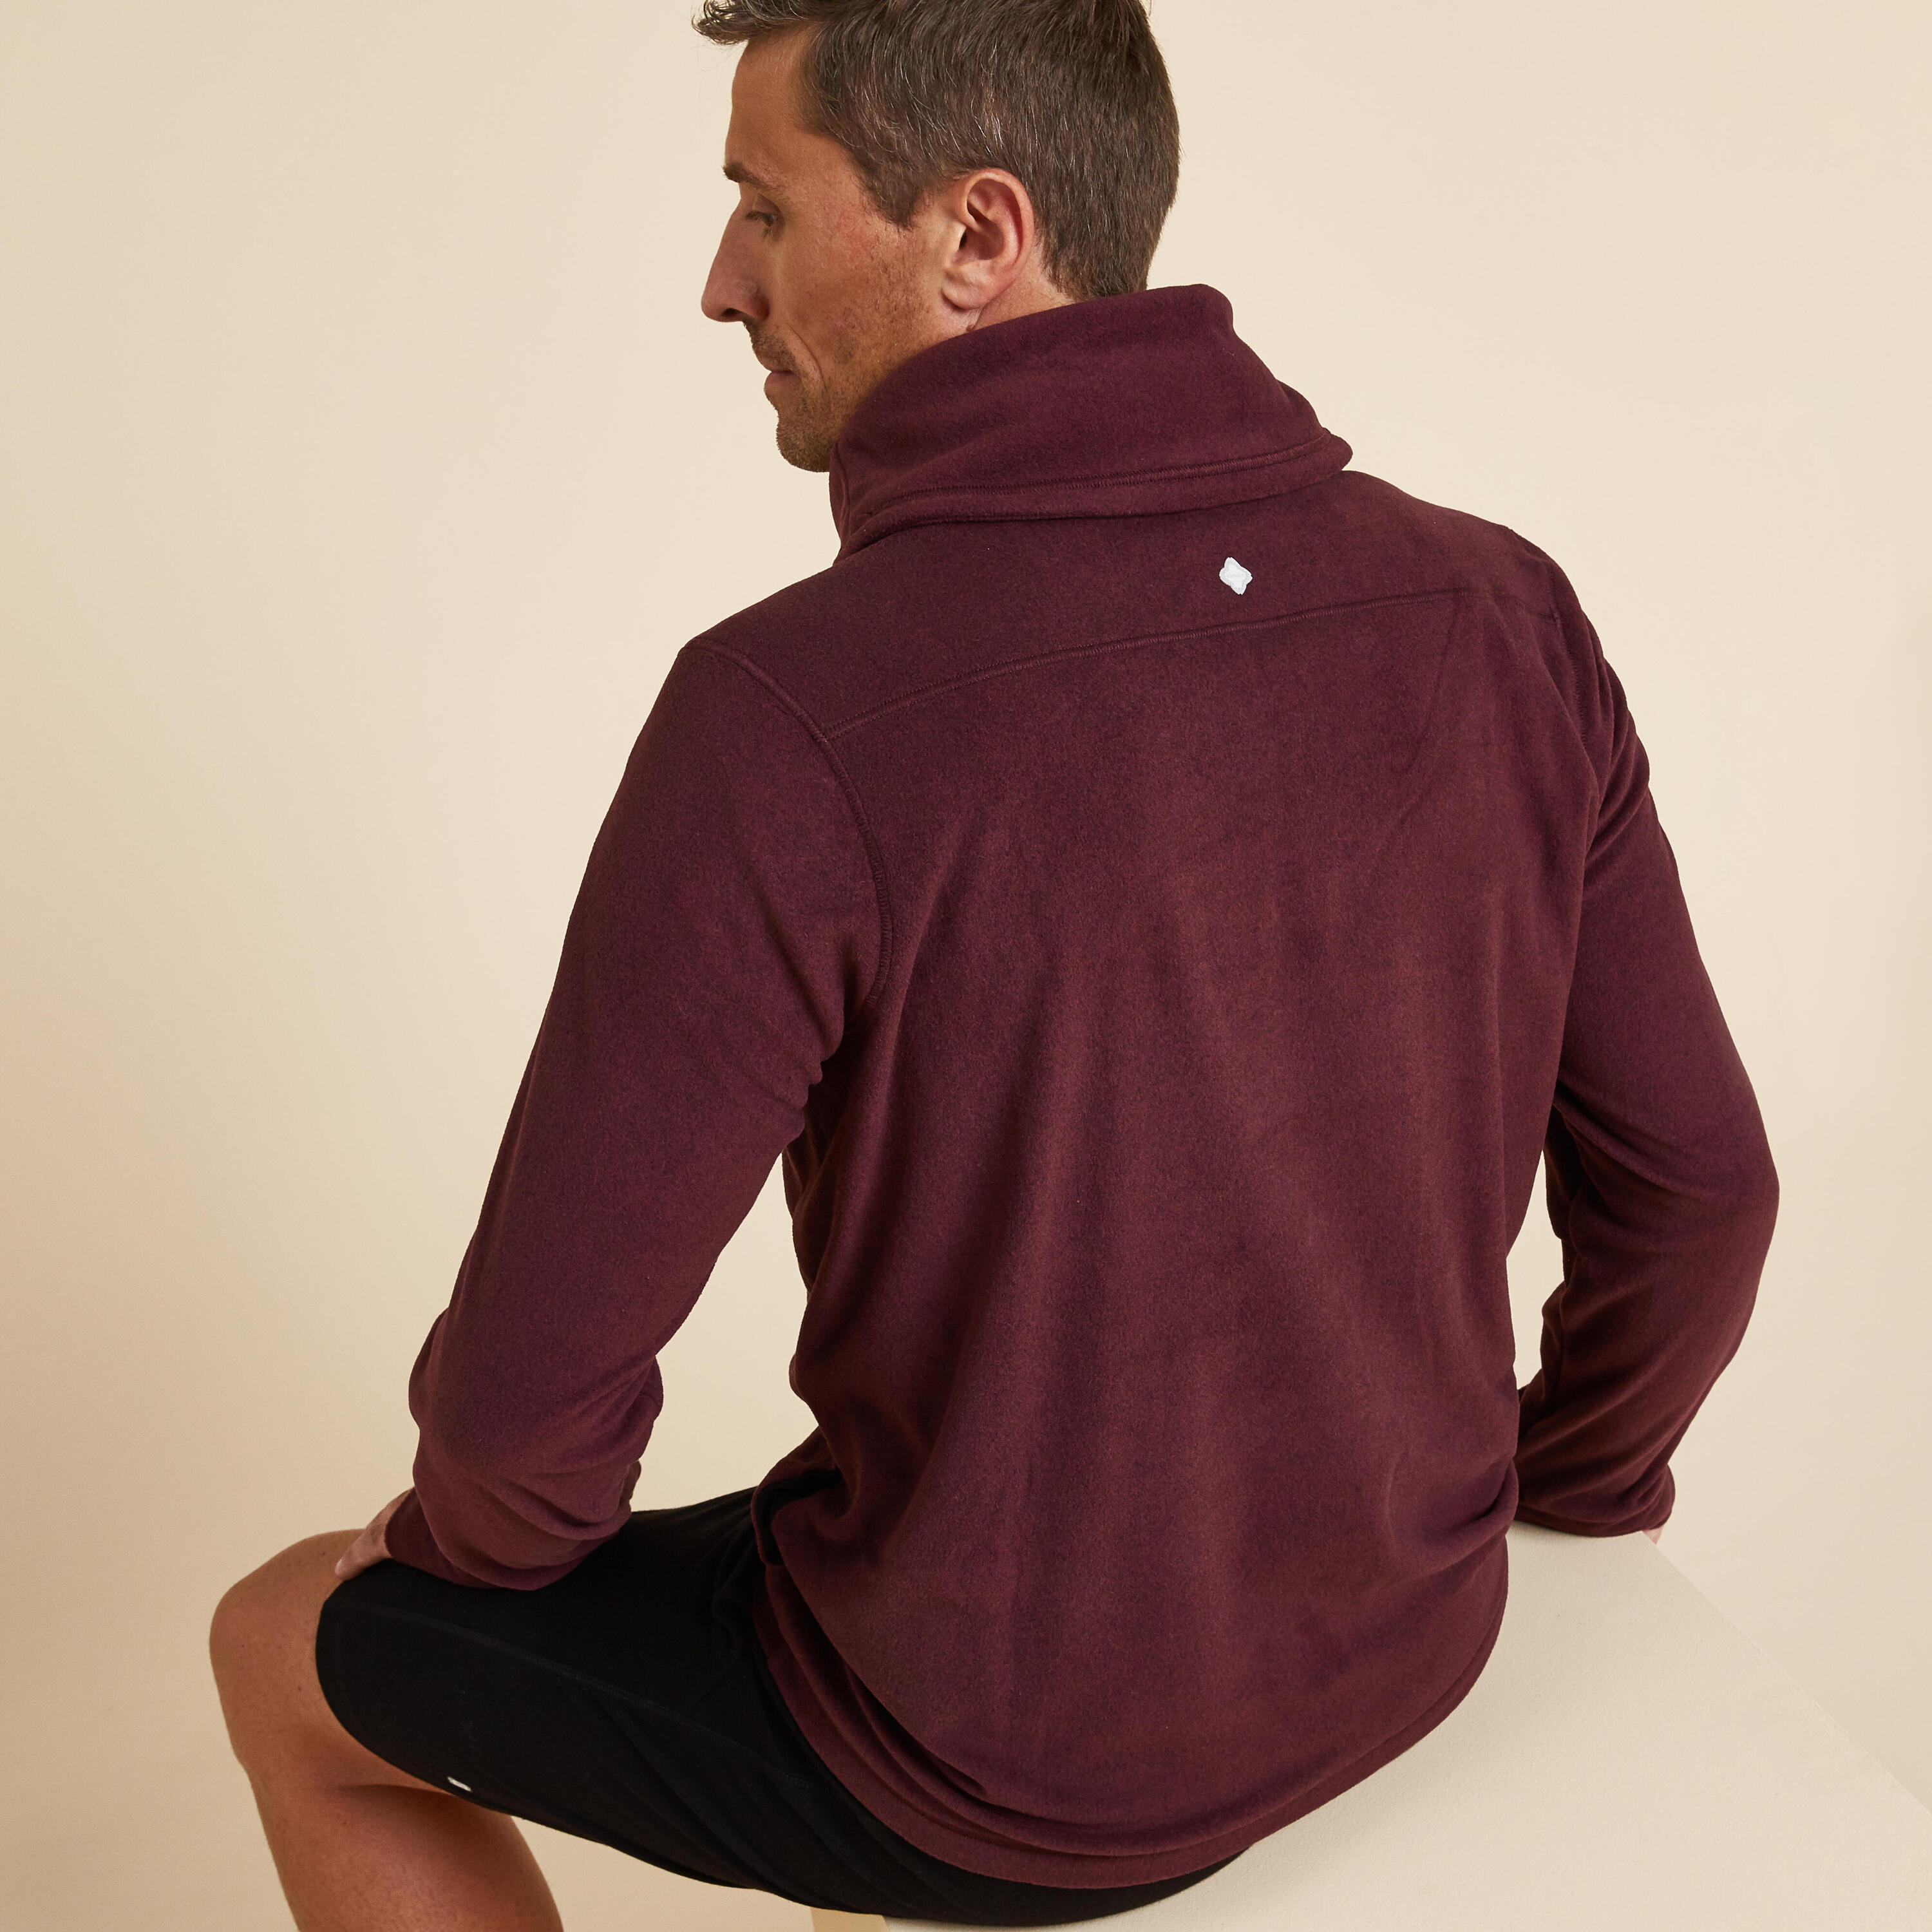 Men's Fleecy Yoga Sweatshirt - Burgundy 4/6